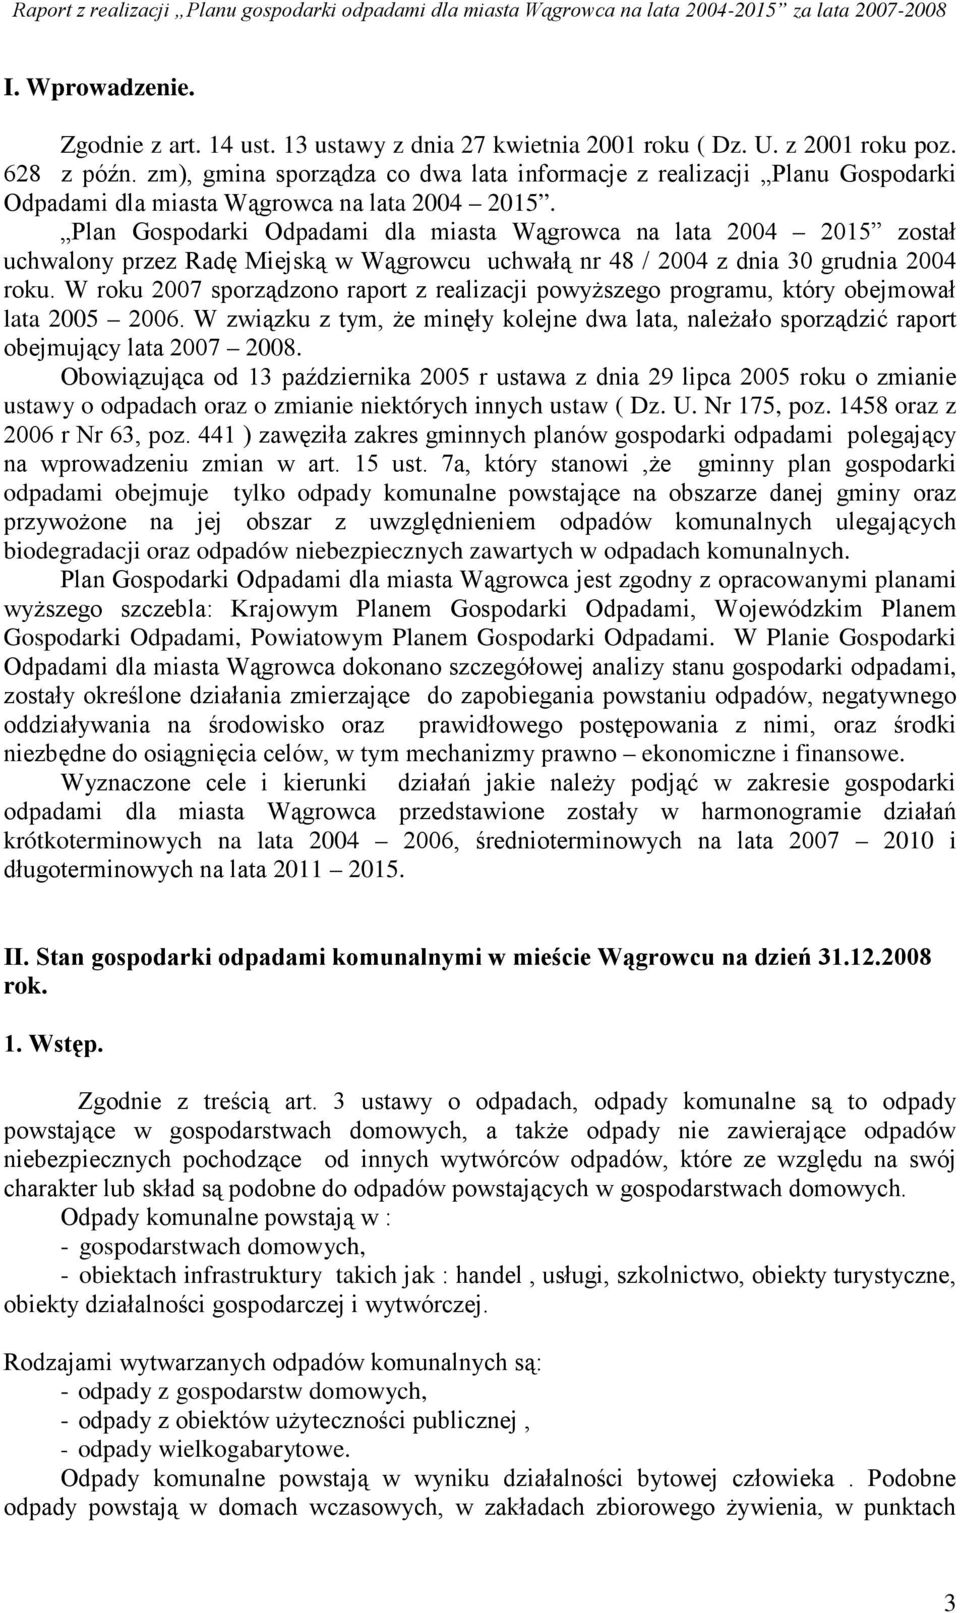 Plan Gospodarki Odpadami dla miasta Wągrowca na lata 2004 2015 został uchwalony przez Radę Miejską w Wągrowcu uchwałą nr 48 / 2004 z dnia 30 grudnia 2004 roku.